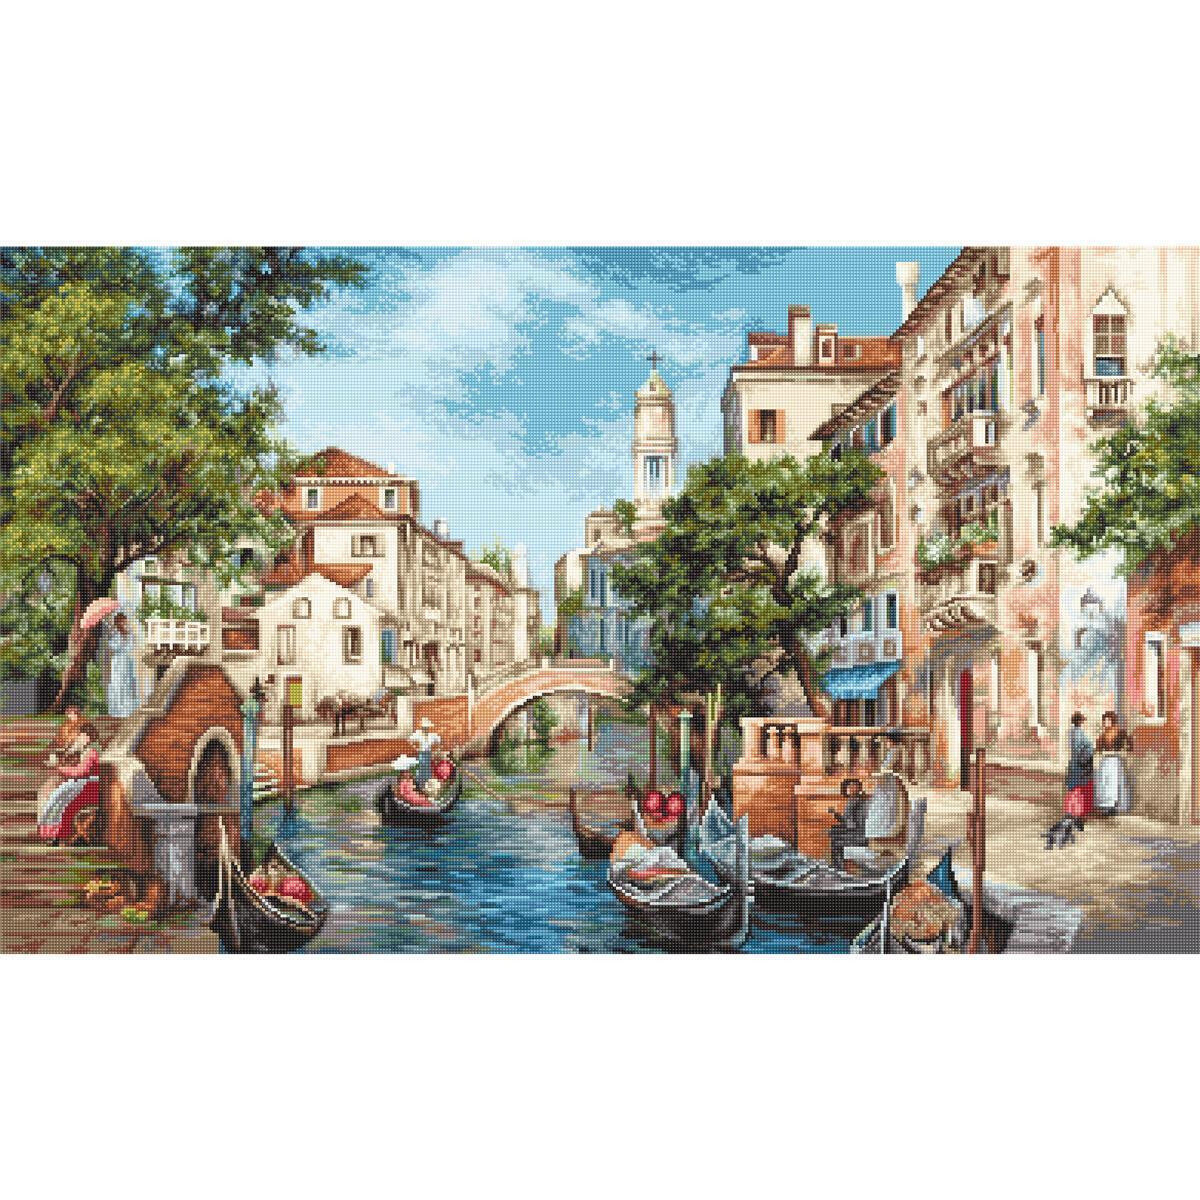 Una pintoresca escena en un canal de Venecia con...